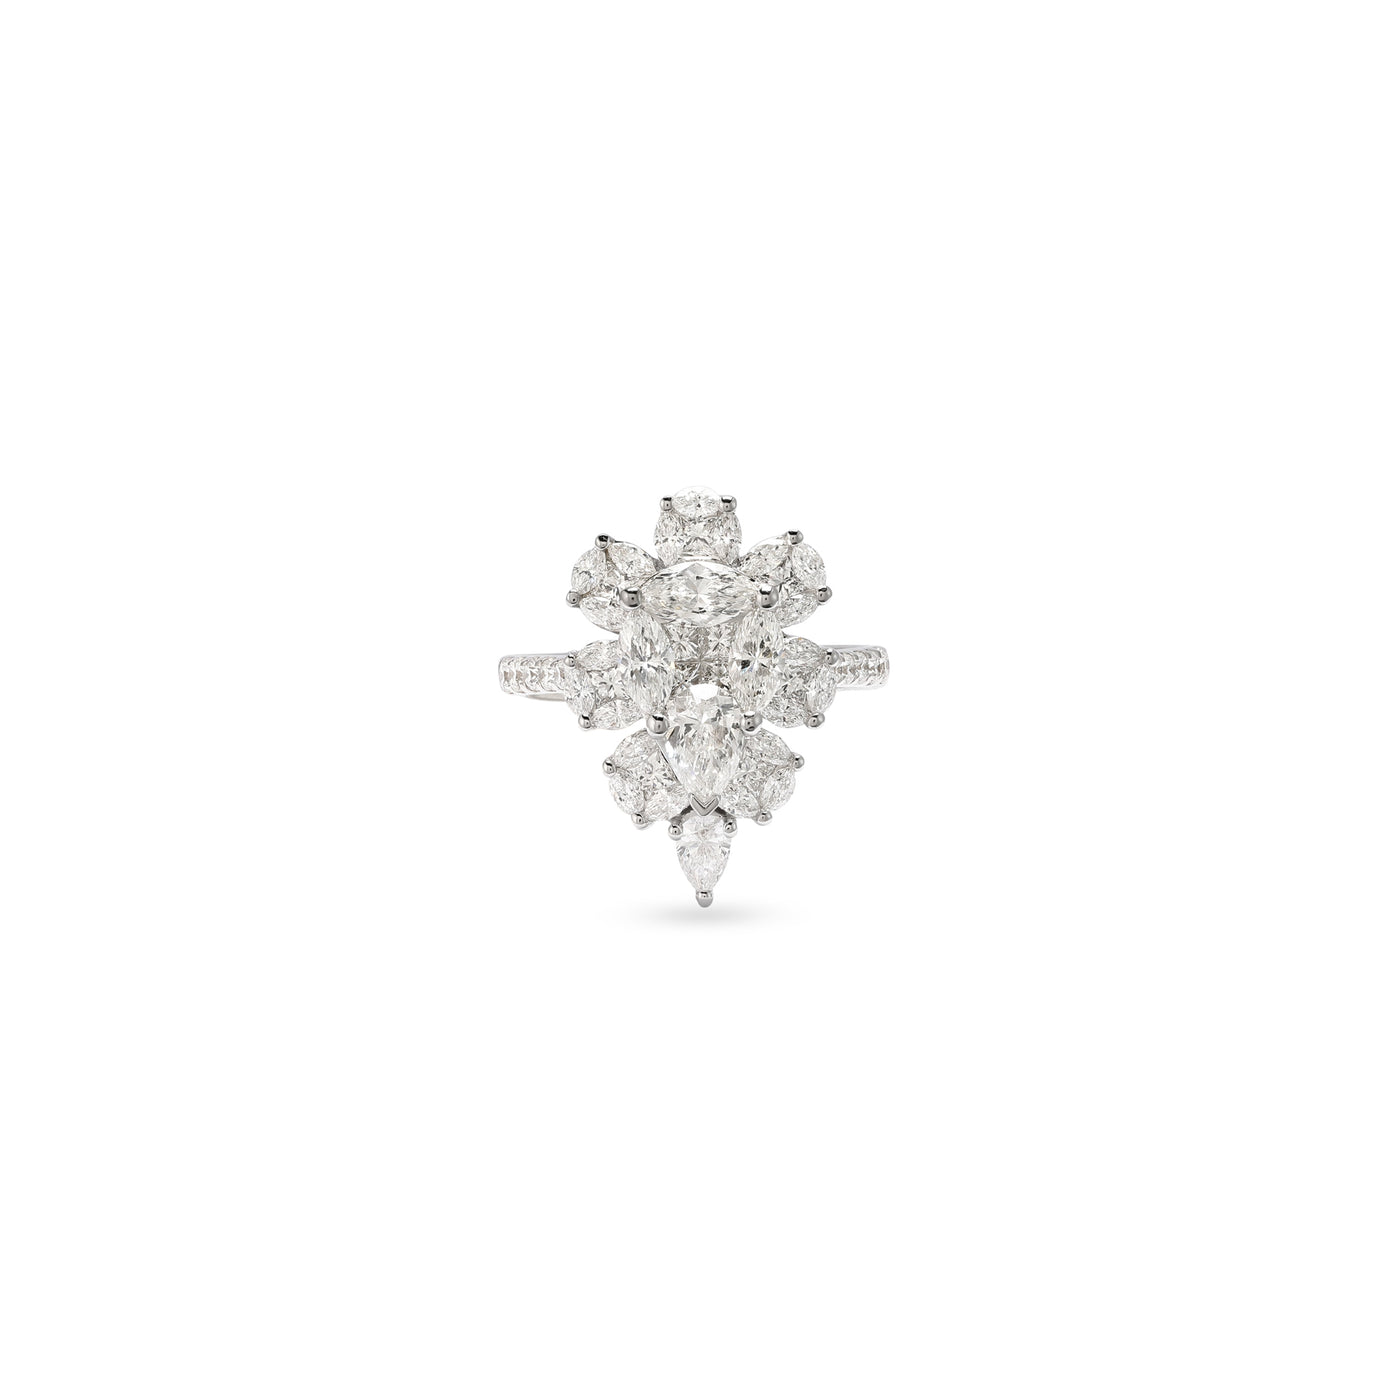 Soit Belle Vintage 18K White Gold Diamond Ring for a Timeless Beauty